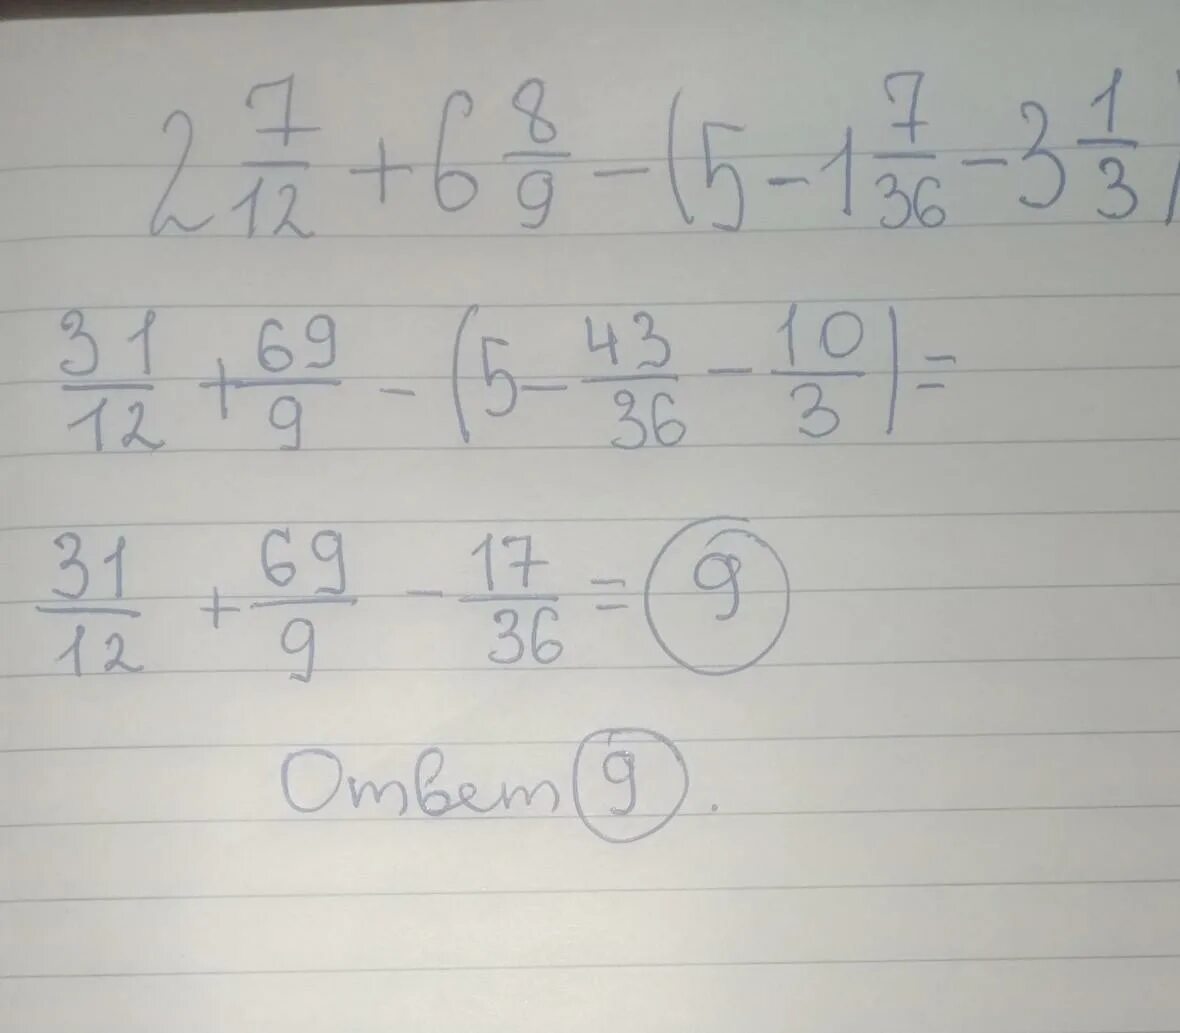 63 7 4 ответ. Правильный ответ в примере 36/3(8-6)/6.